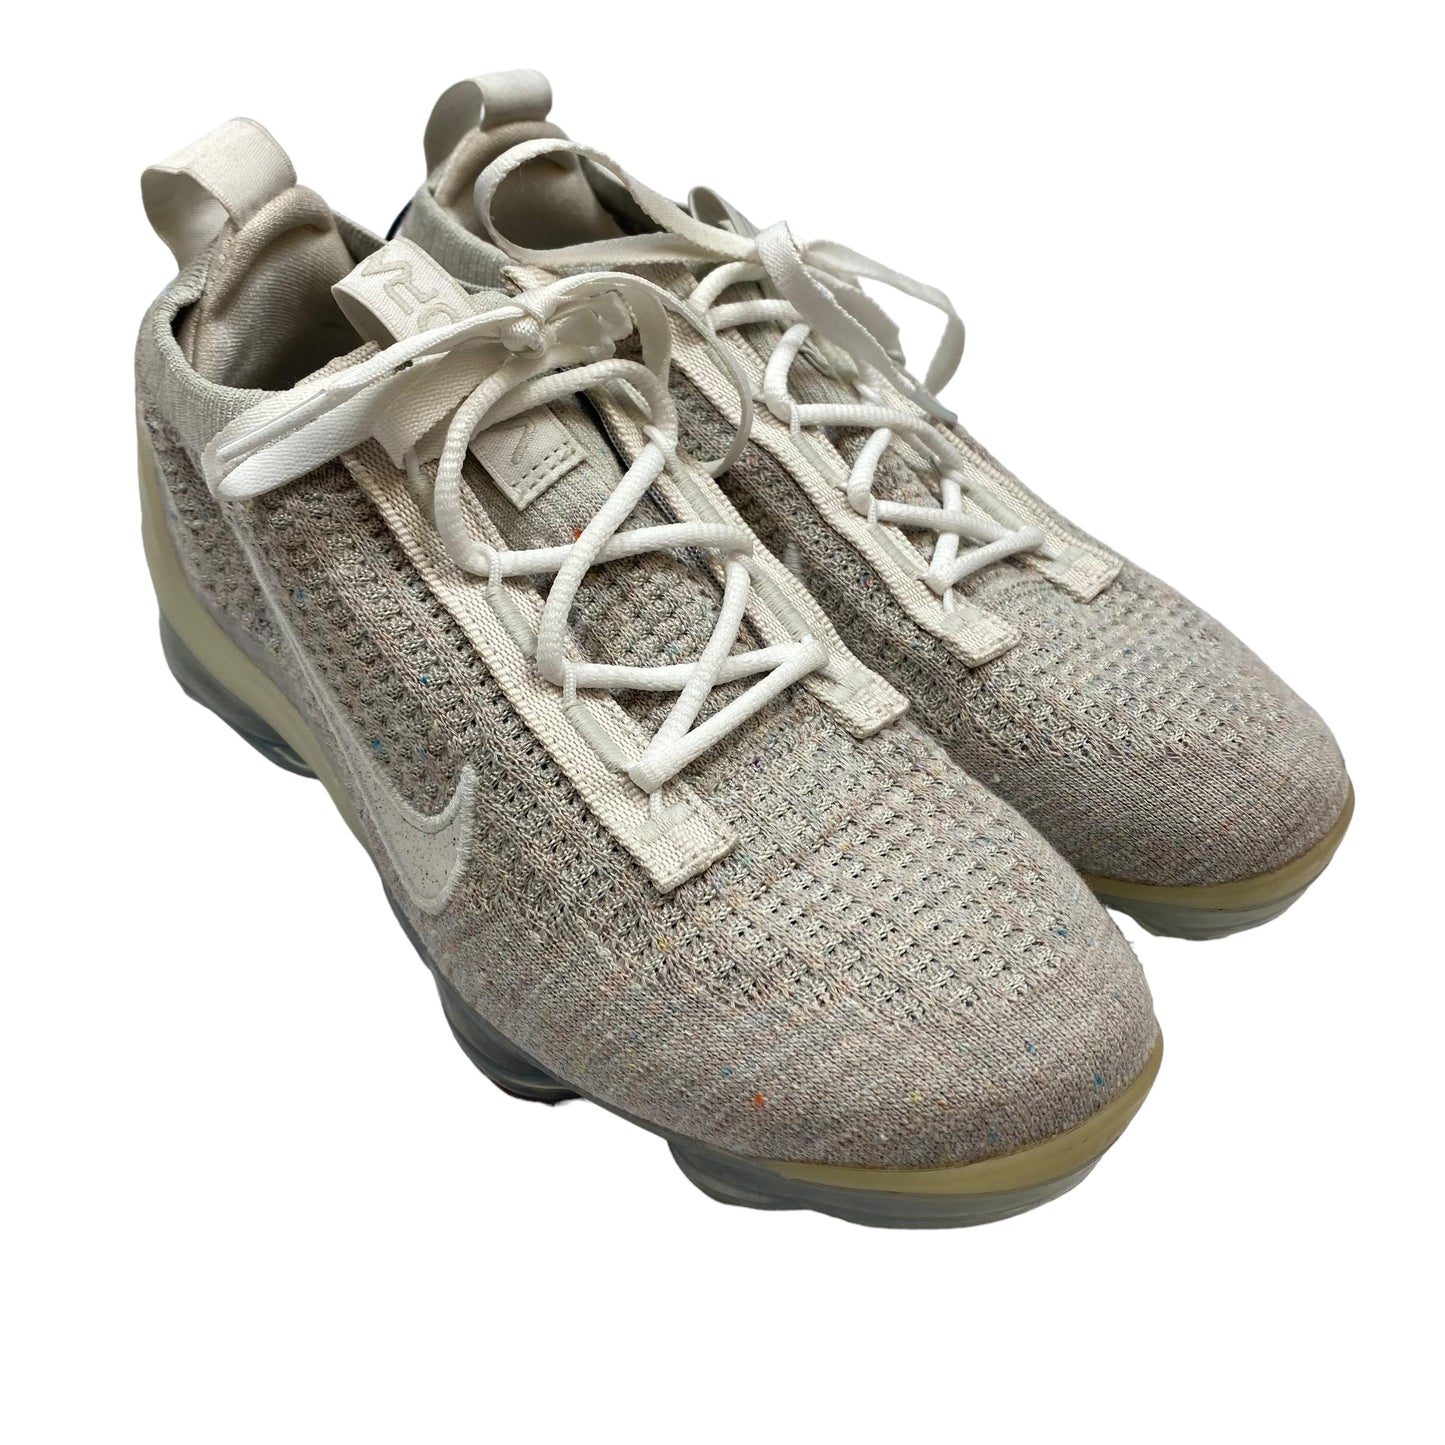 Grey Shoes Athletic Nike, Size 6